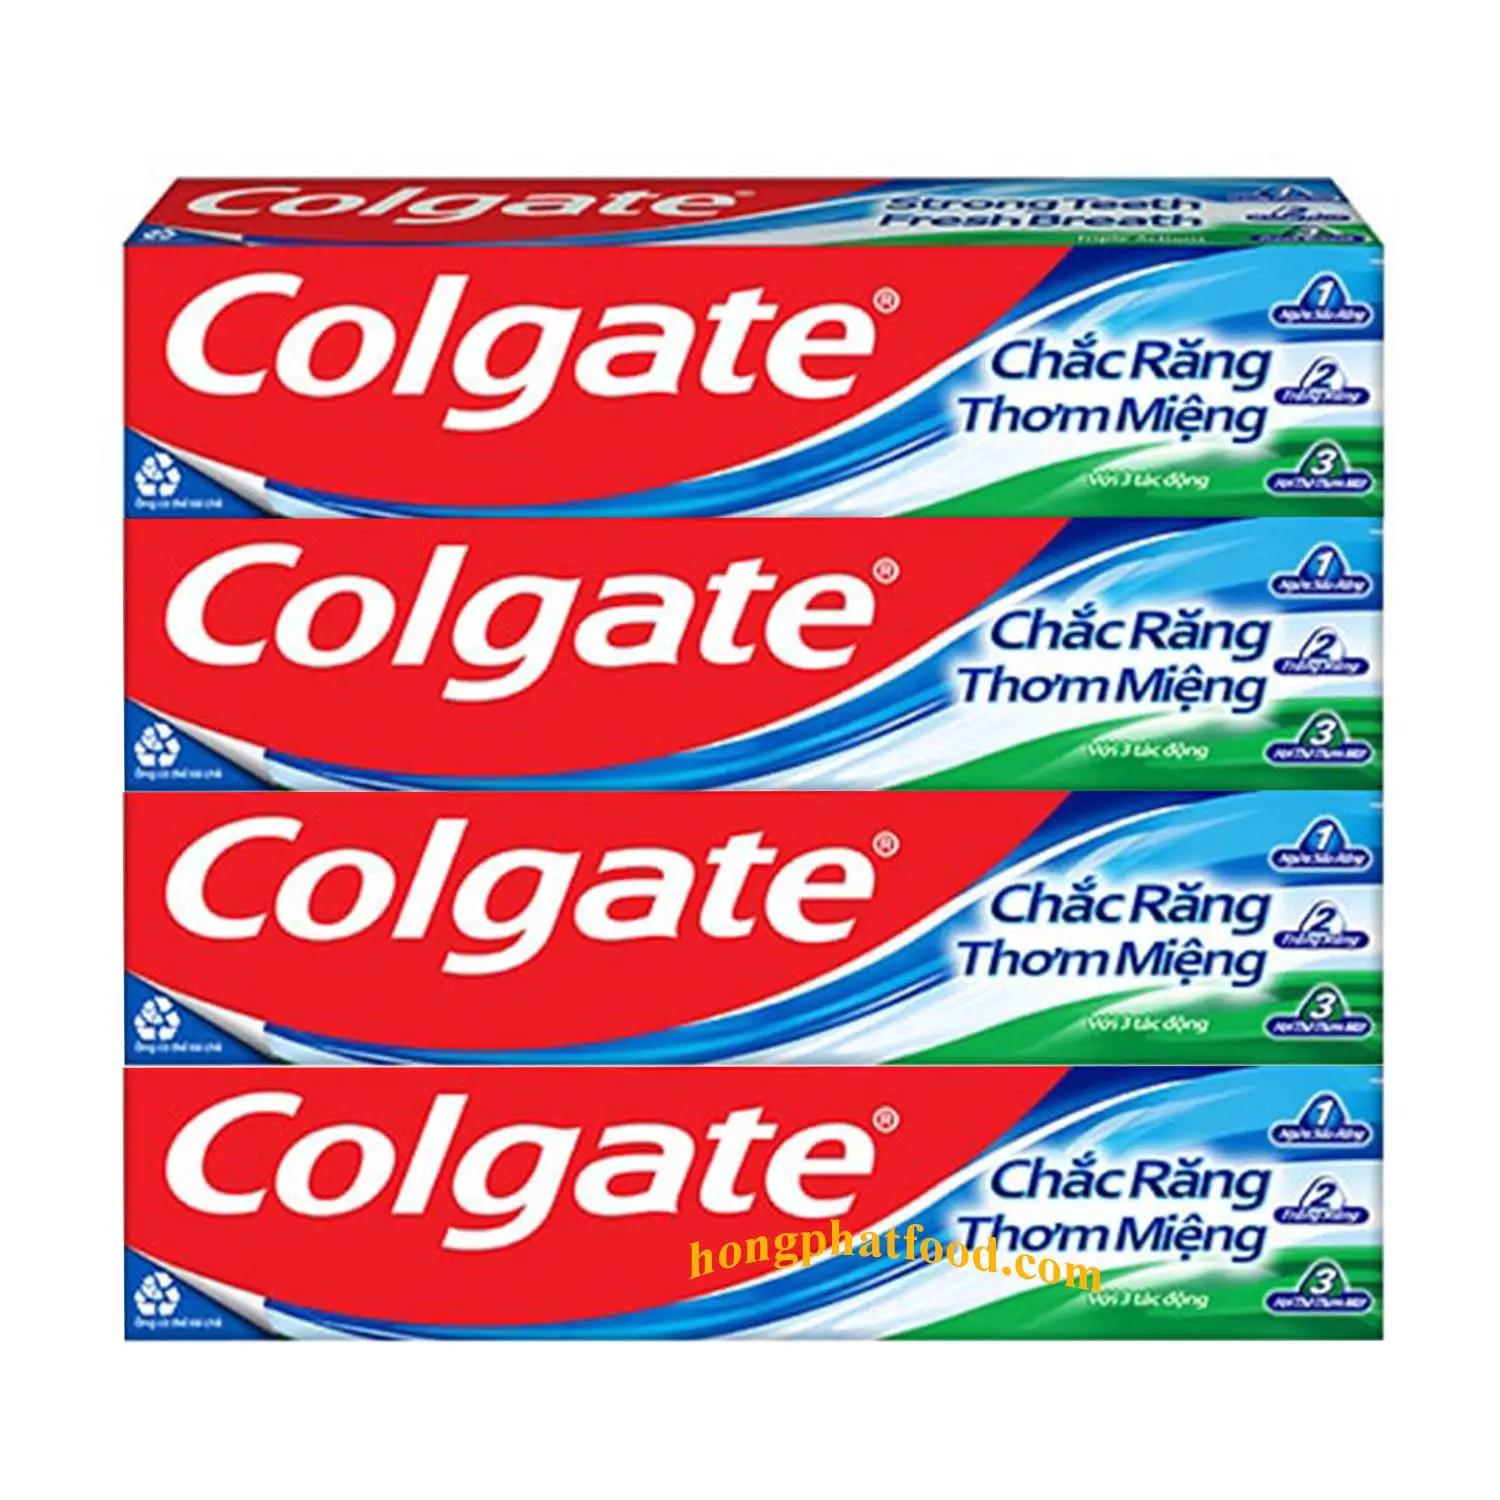 Dentifrice pour l'exportation Colgatee triple action dentifrice 180gx48 tubes du Vietnam enlever les taches renforcer les dents dentifrice